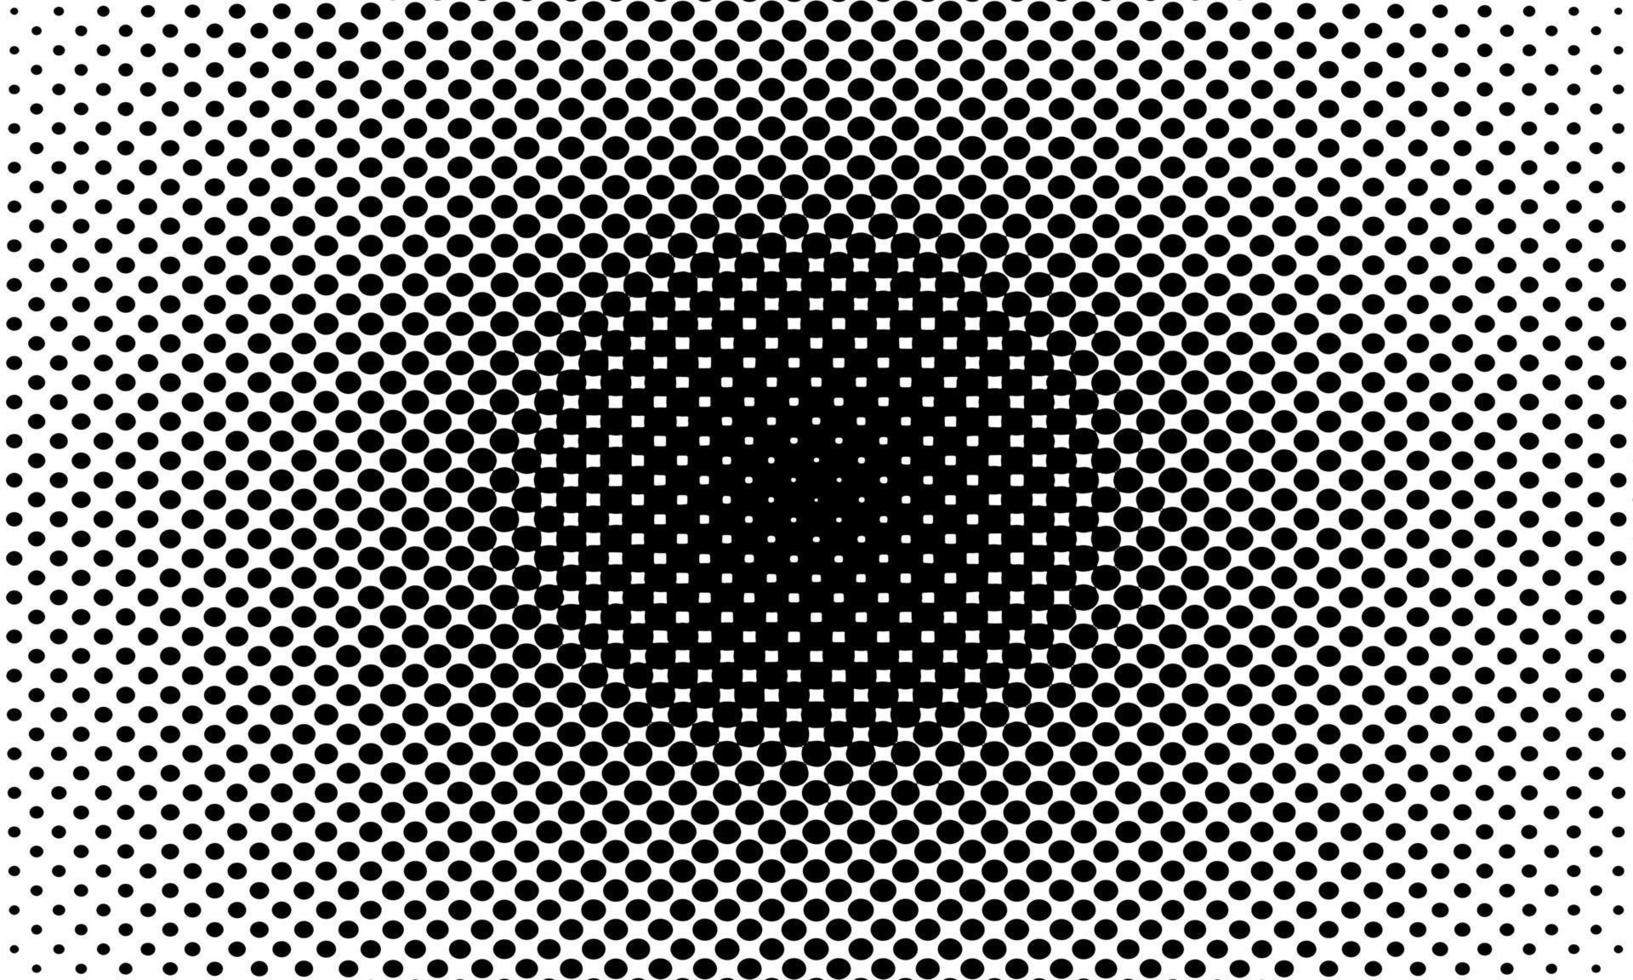 fond pop art blanc noir avec des points de demi-teintes dans un style bande dessinée rétro. illustration vectorielle. vecteur